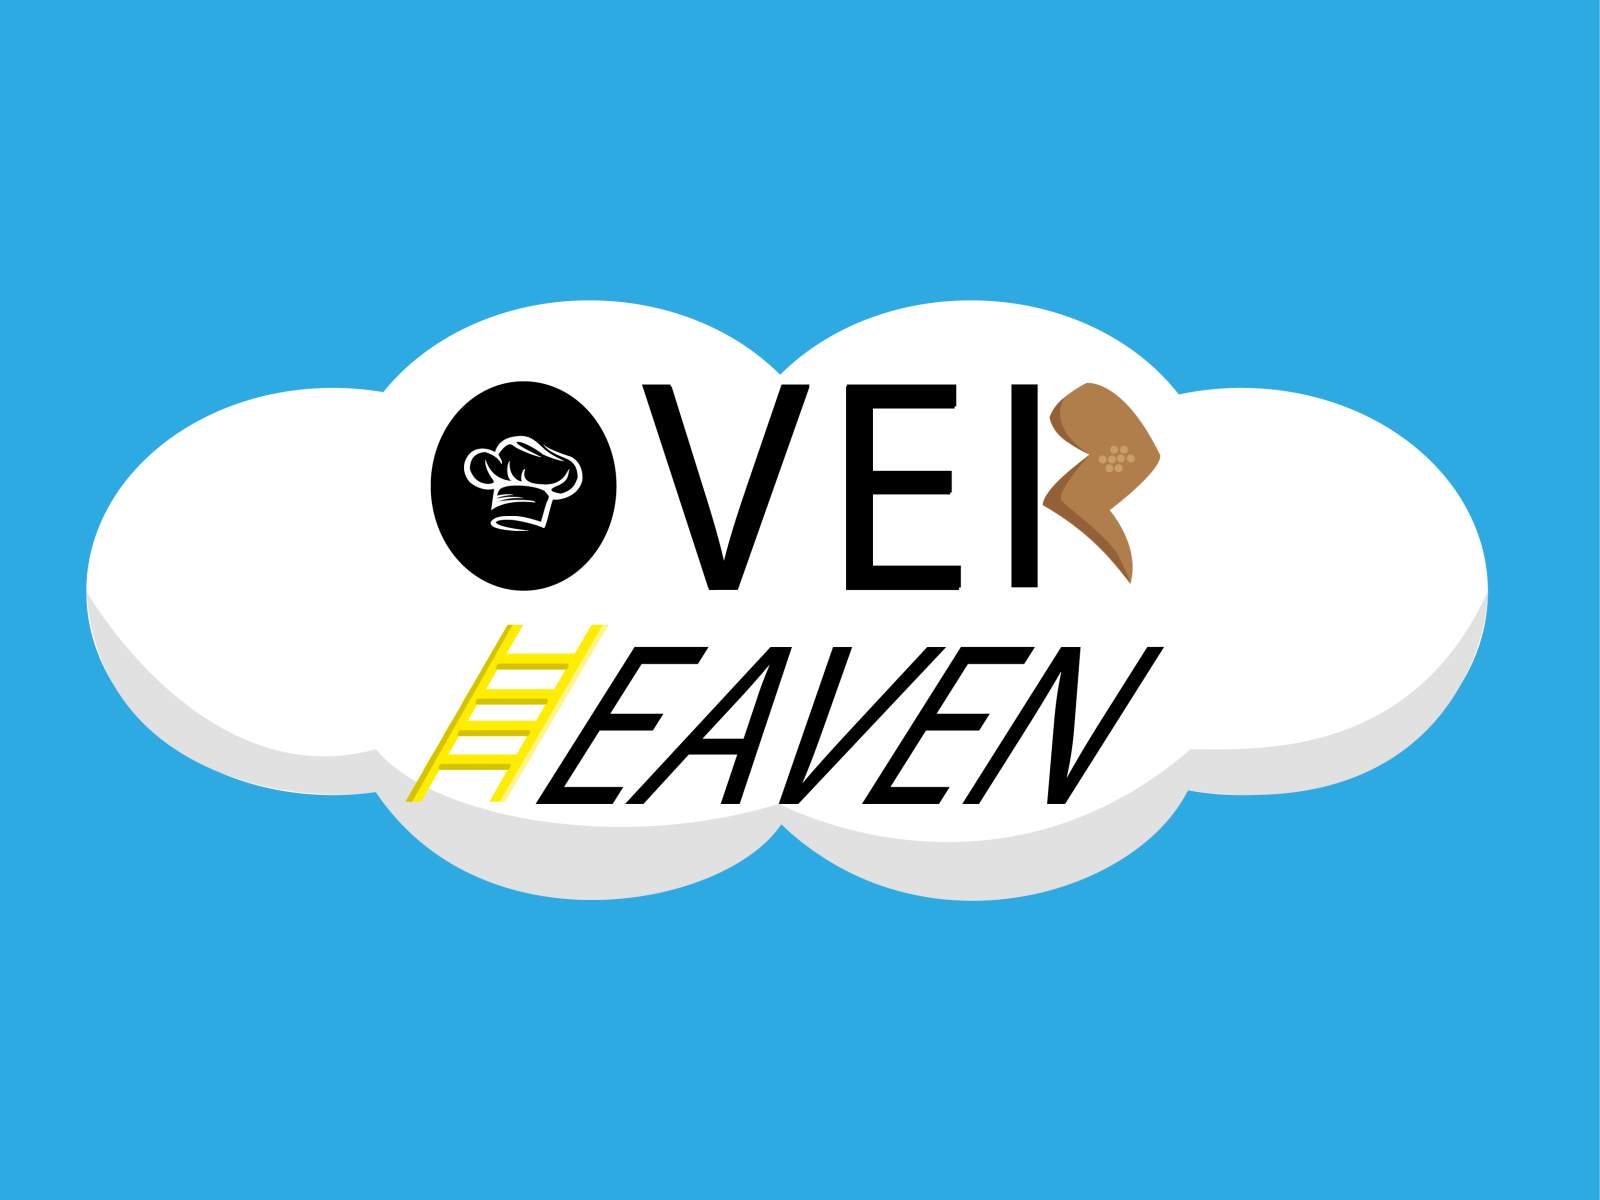 Eagle Heaven Observe elegant vector logo design 23004853 Vector Art at  Vecteezy